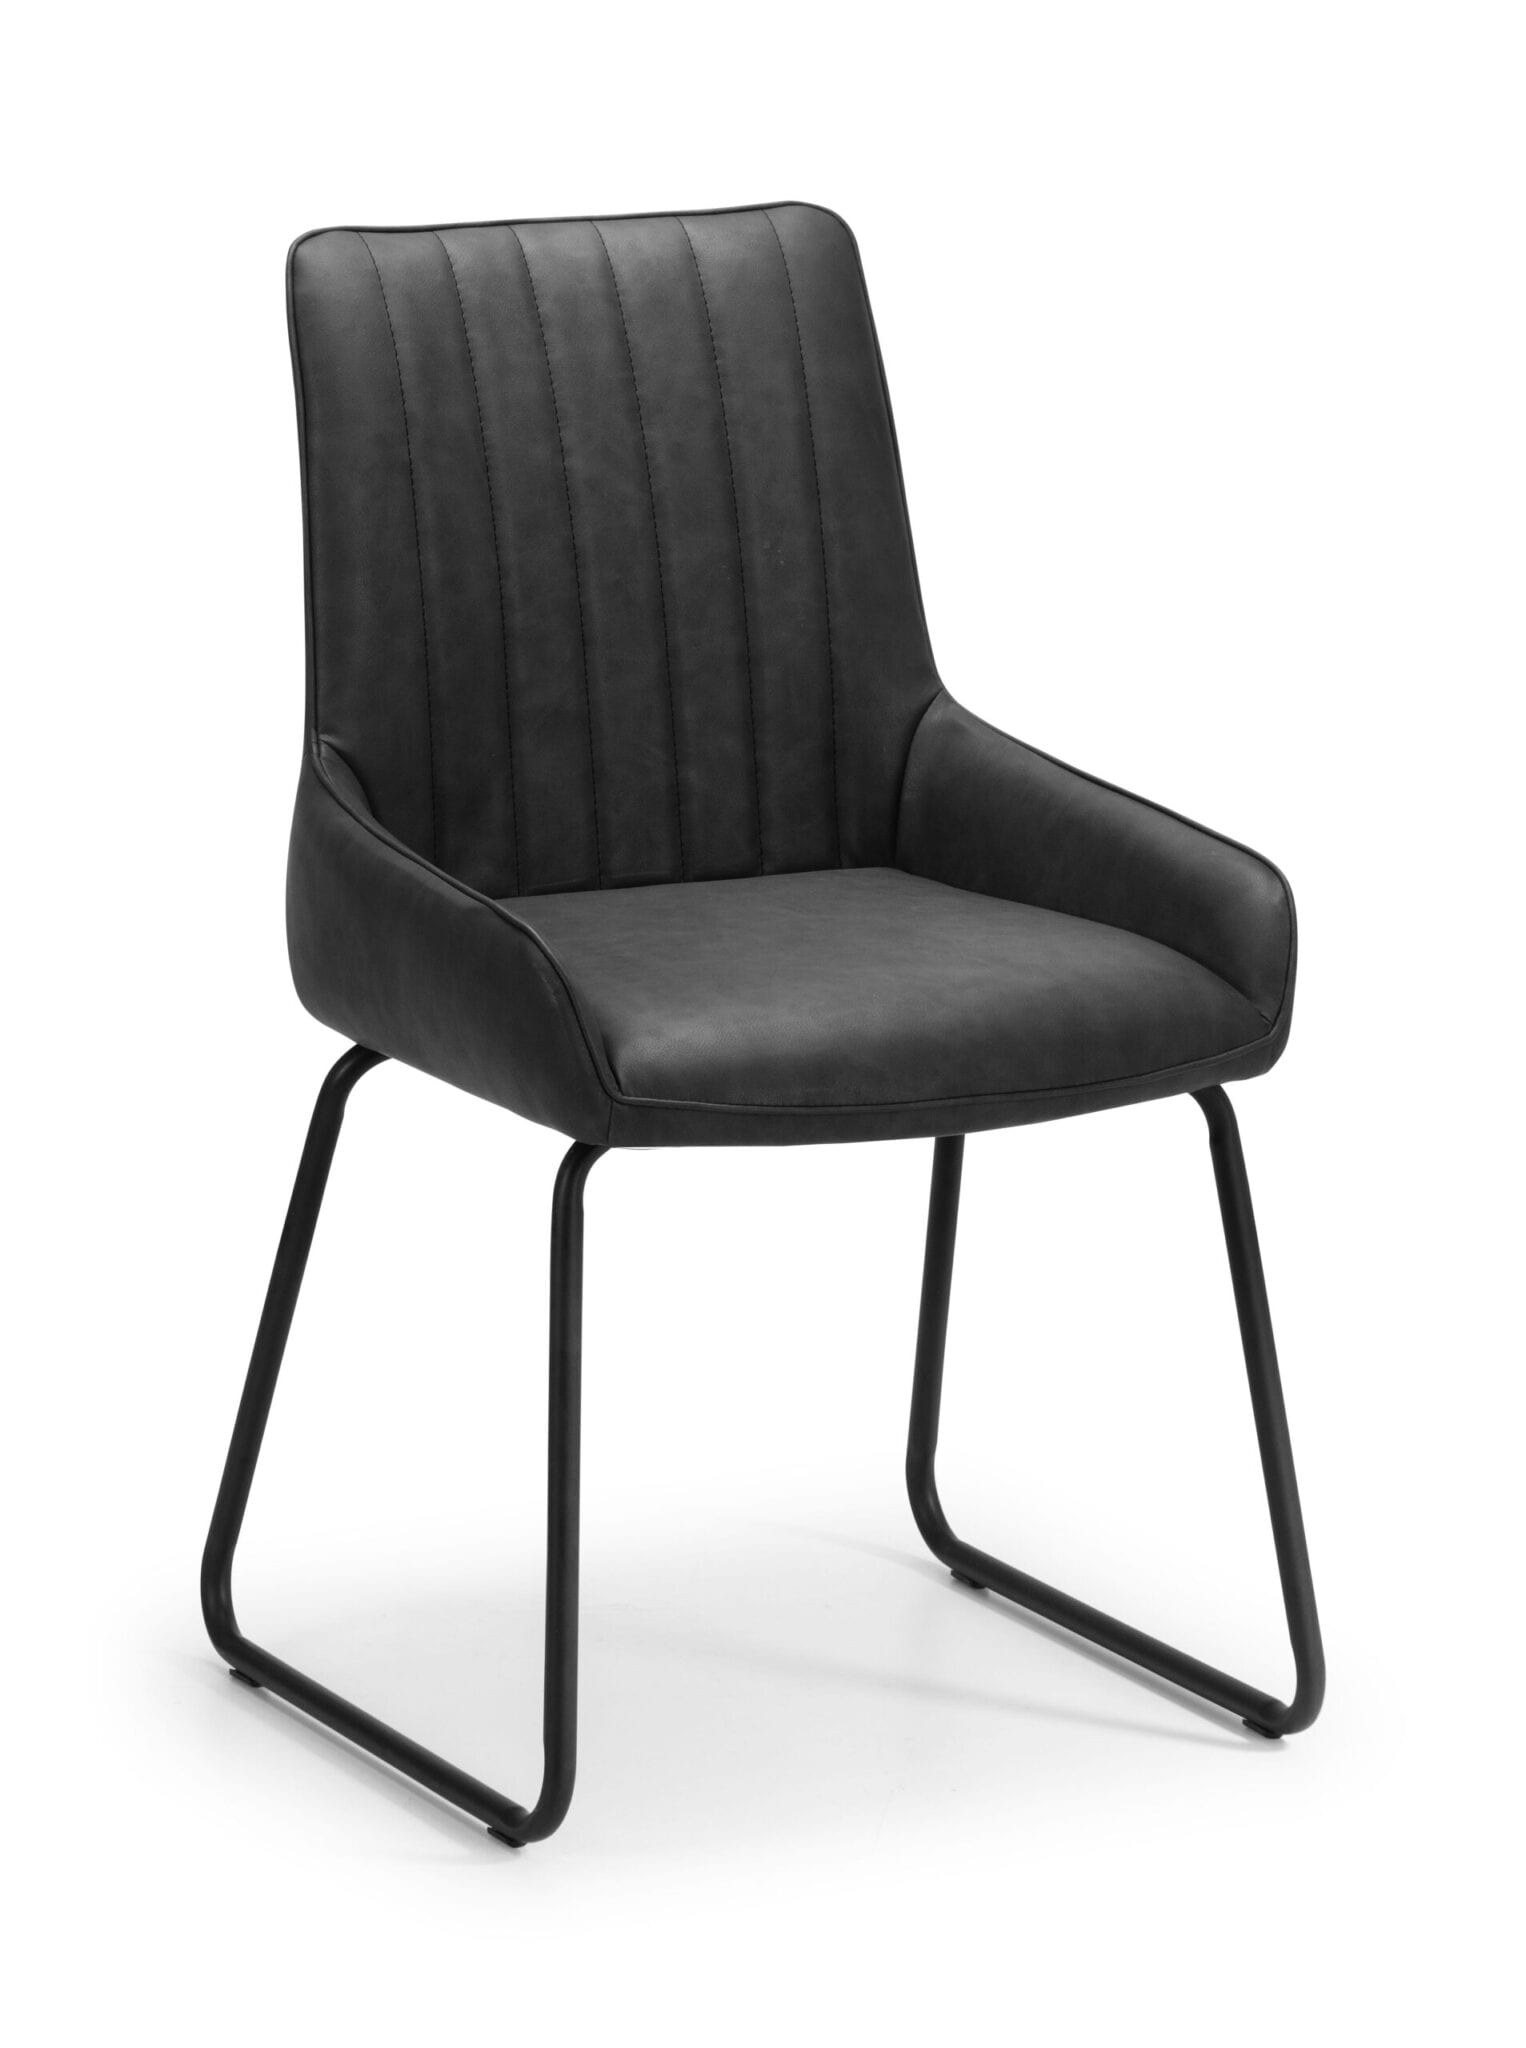 Ludo Chair Antique Black Faux Leather